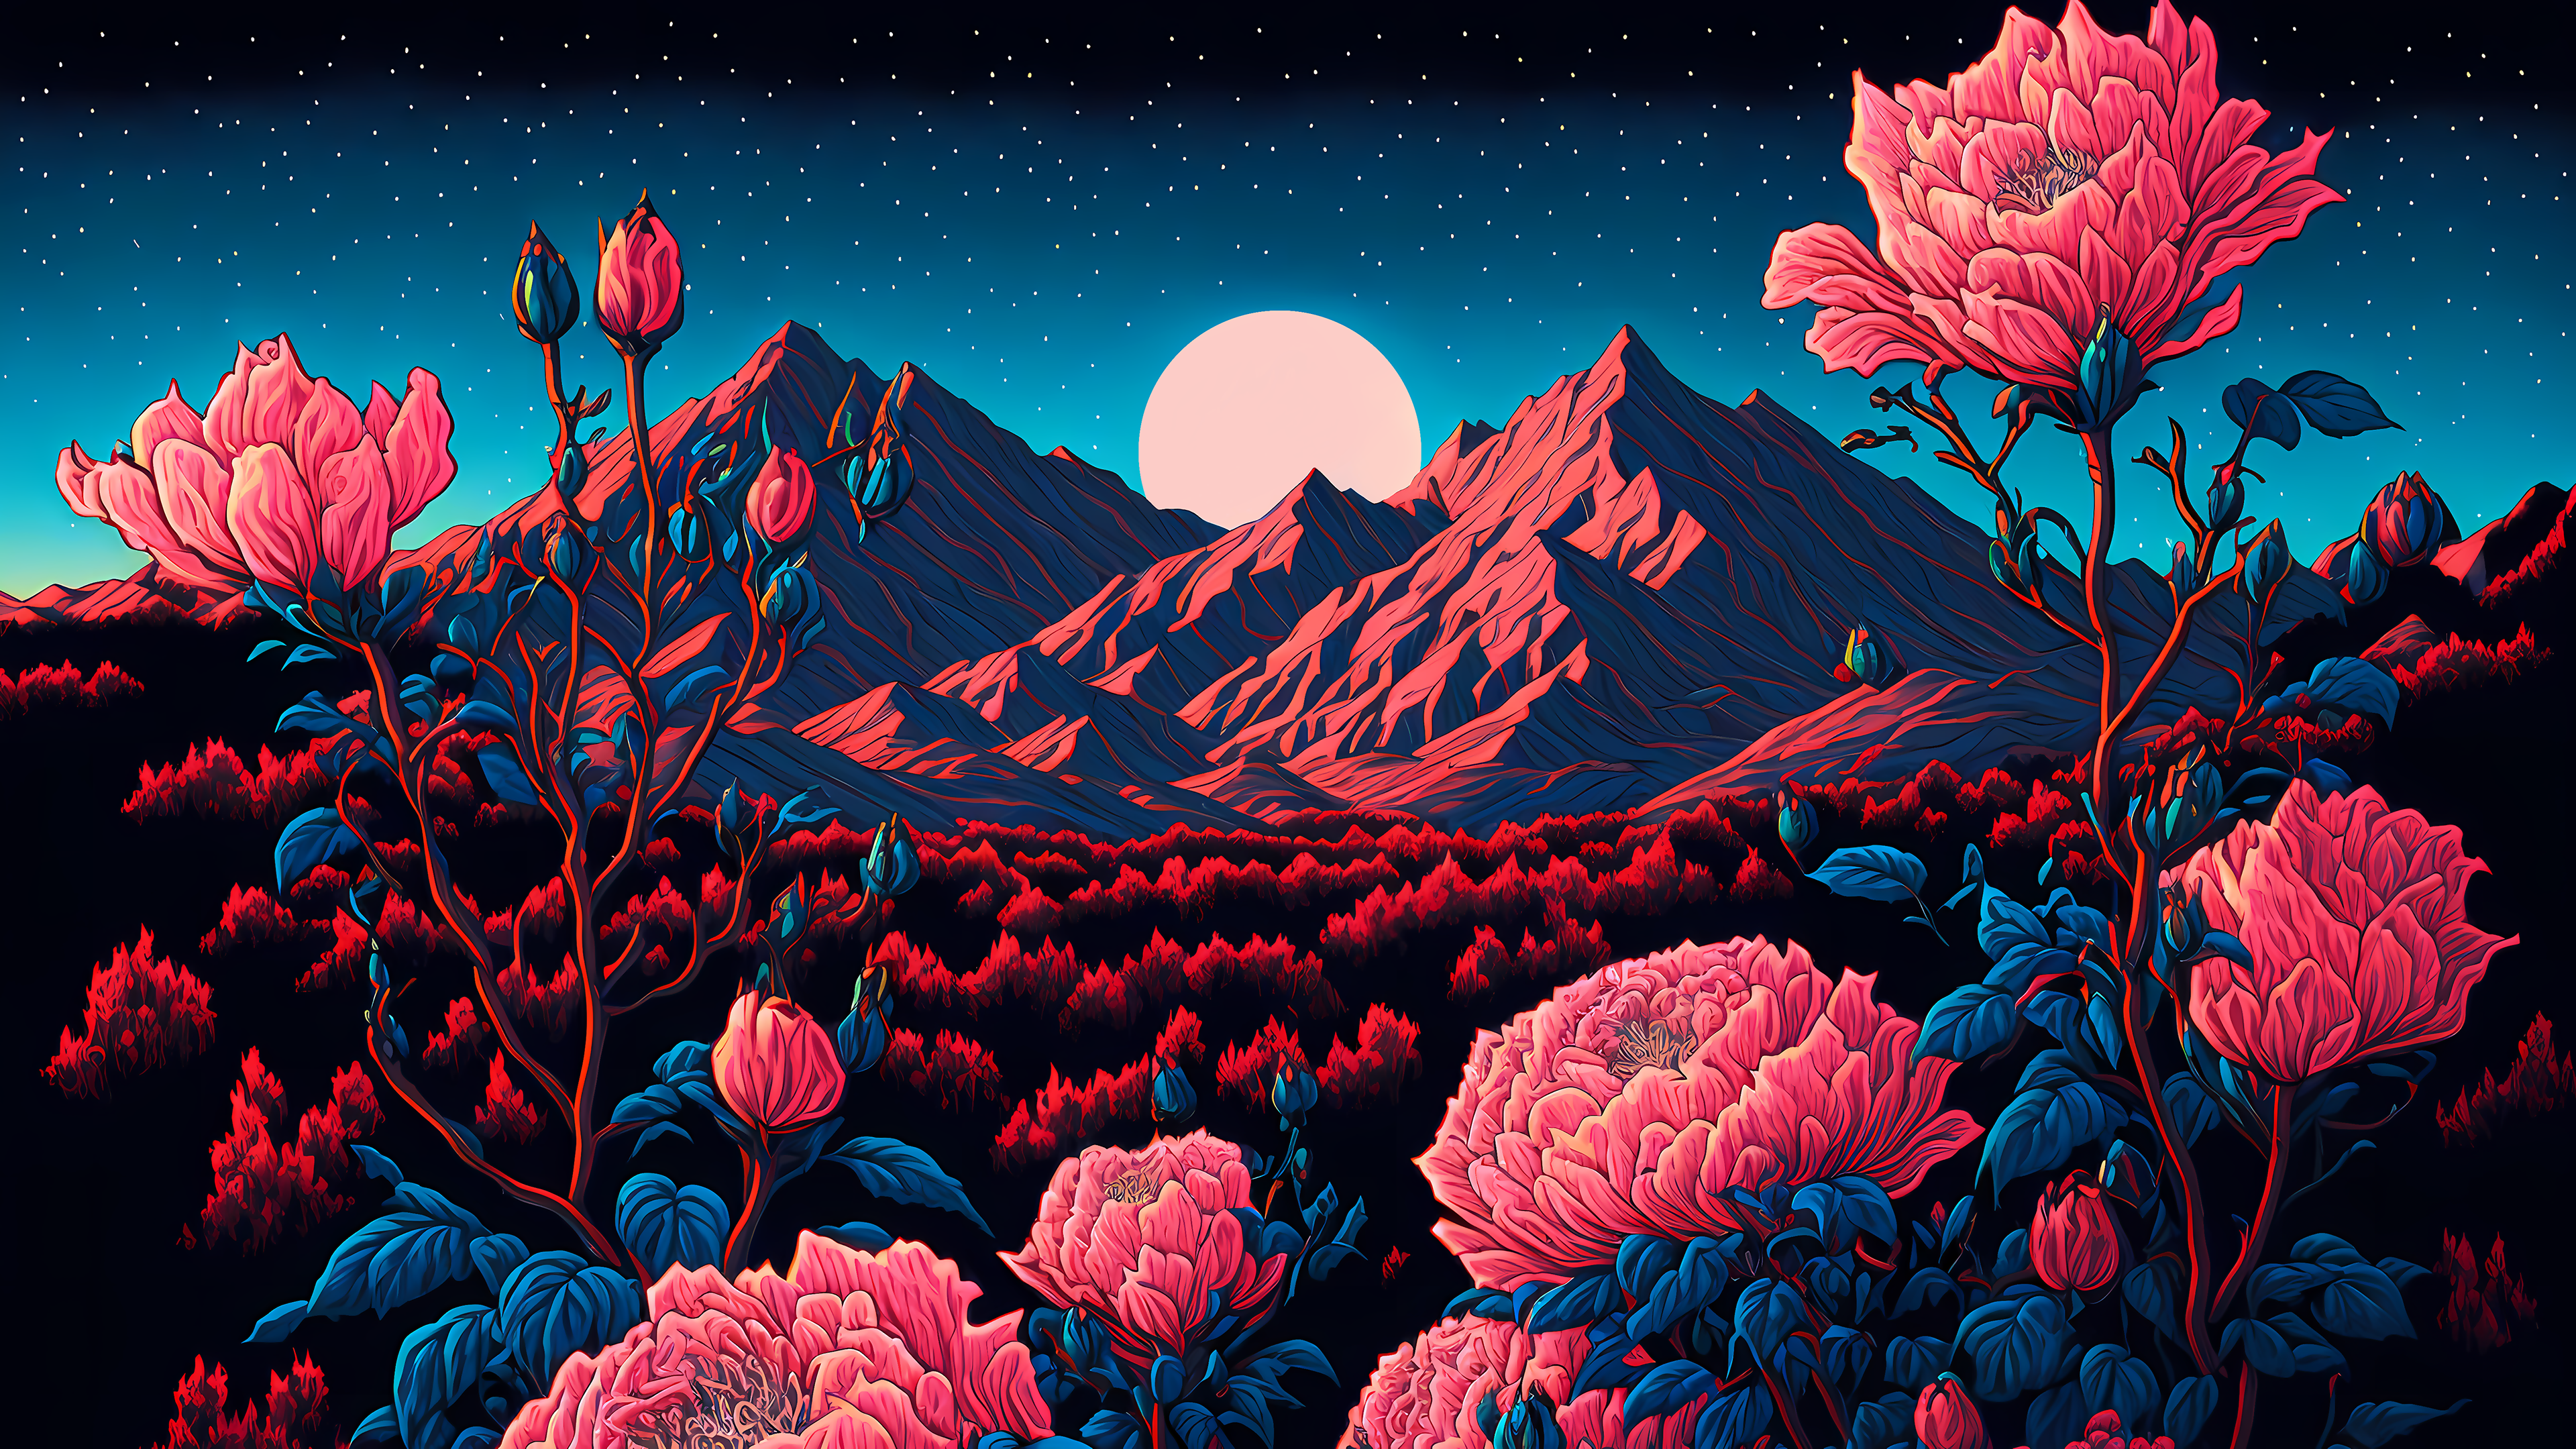 نقاشی ماه و گل های سرخ و کوهستان زیر آسمان پرستاره توليد شده توسط هوش مصنوعی